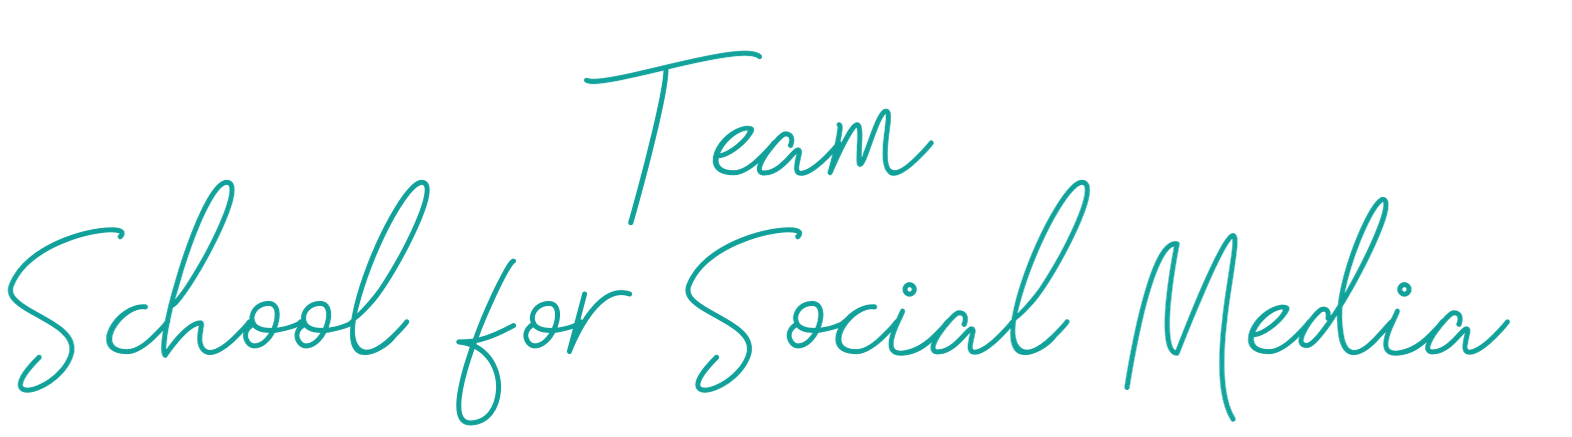 Team School for Social media